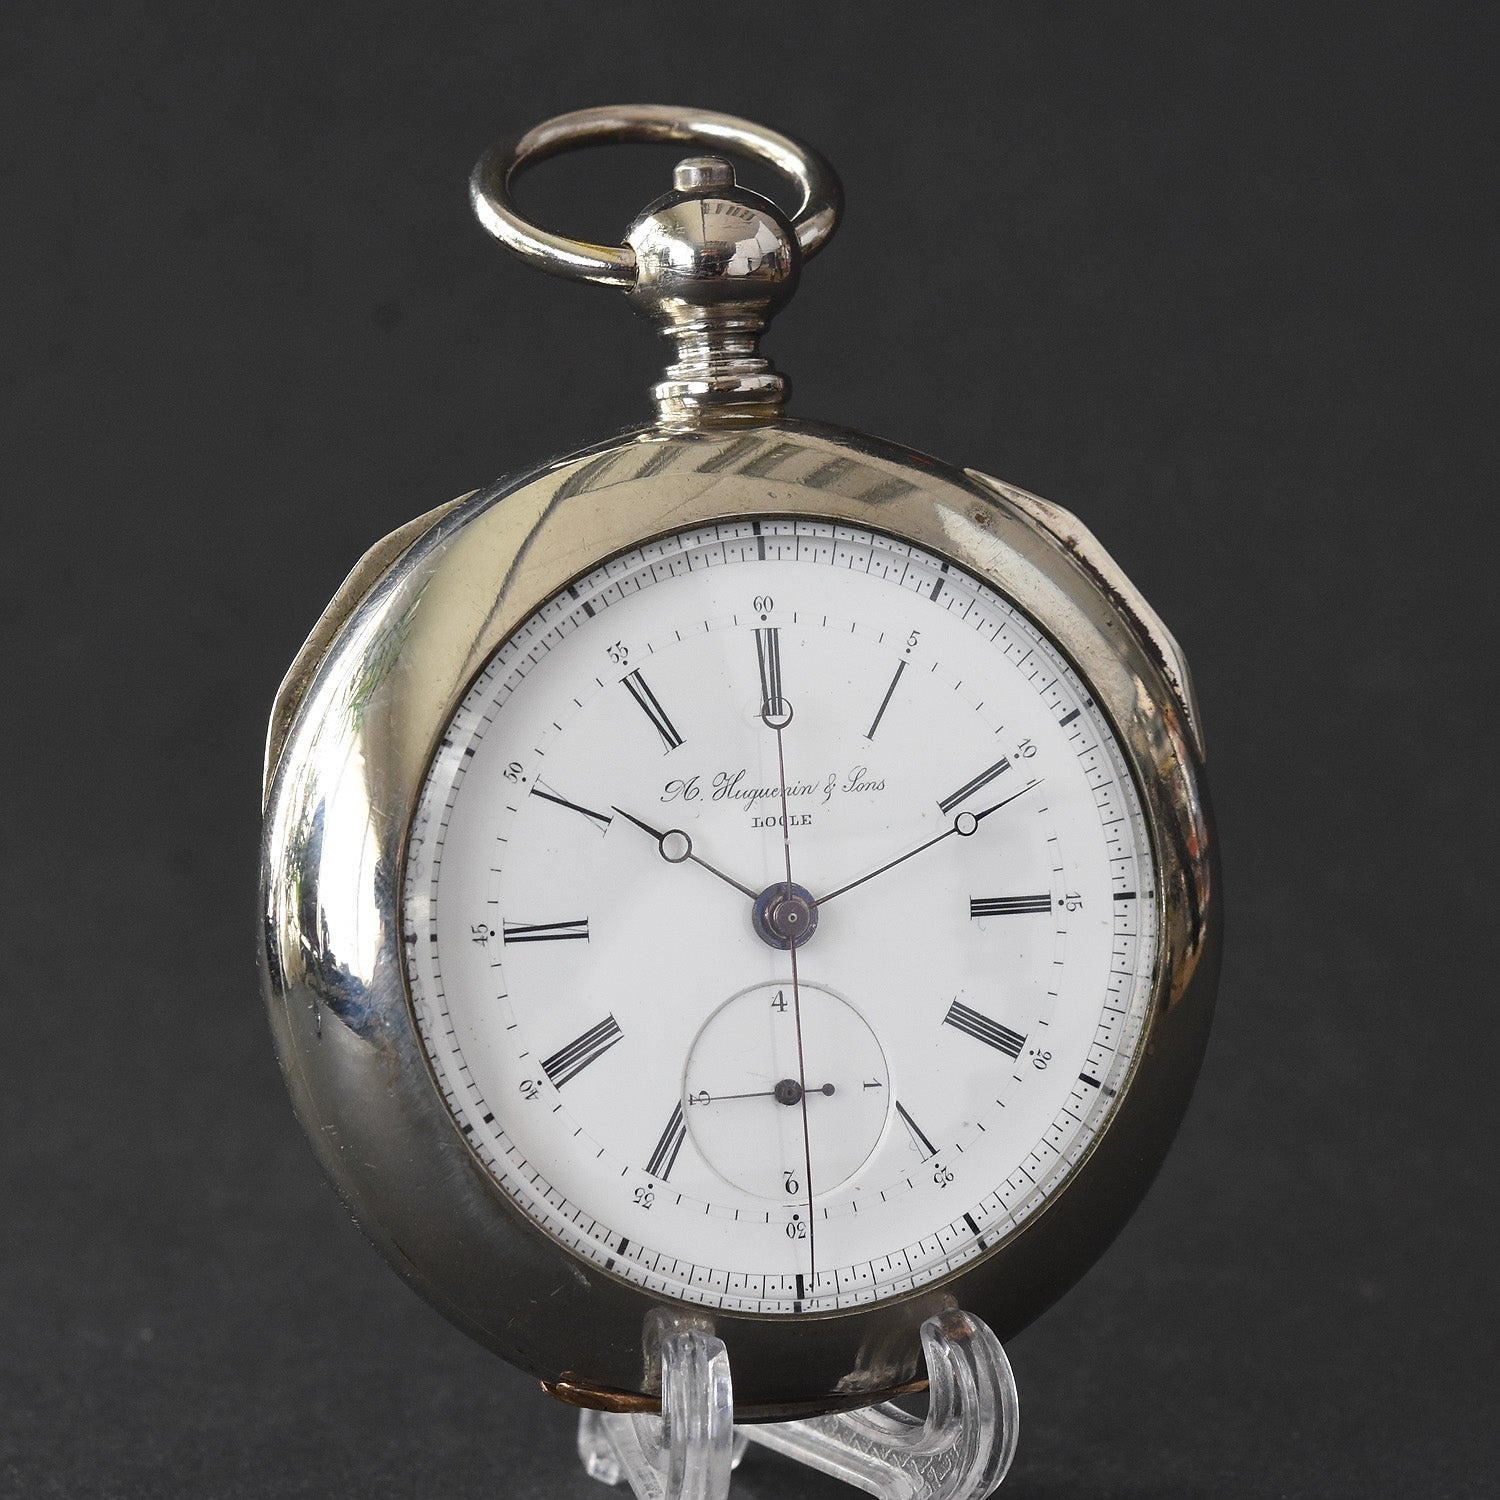 1870s A. HUGUENIN Swiss Independent 1/4 Second Chronograph Pocket Watch